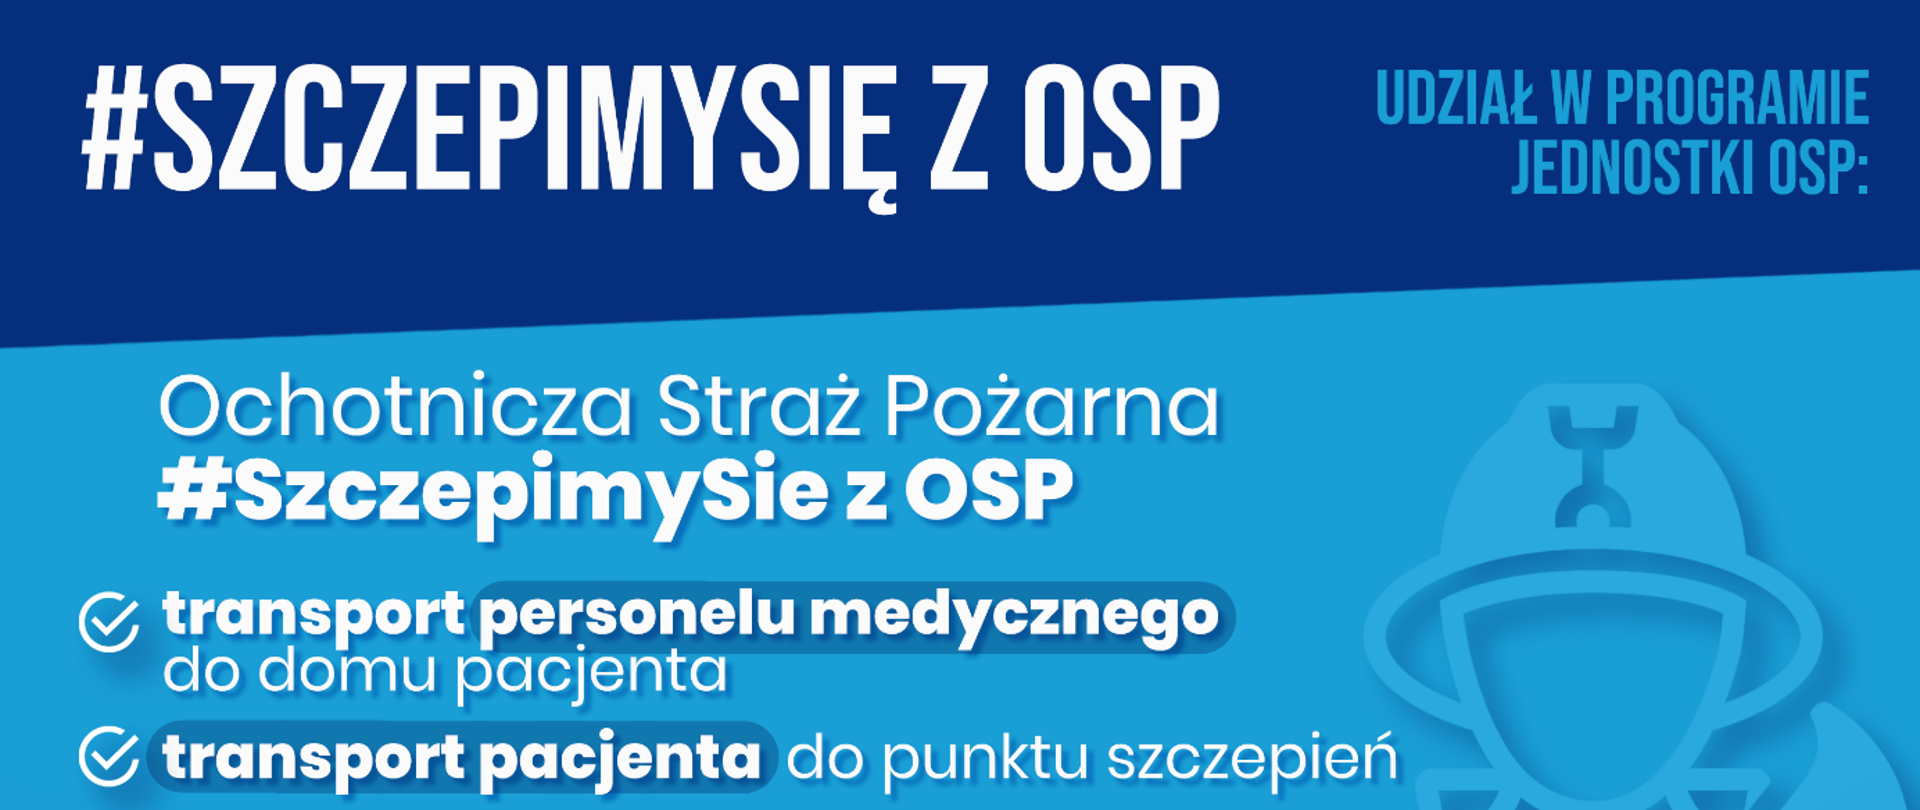 Na plakacie widnieją informację o udziale OSP w akcji szczepień przeciw COVID-19 